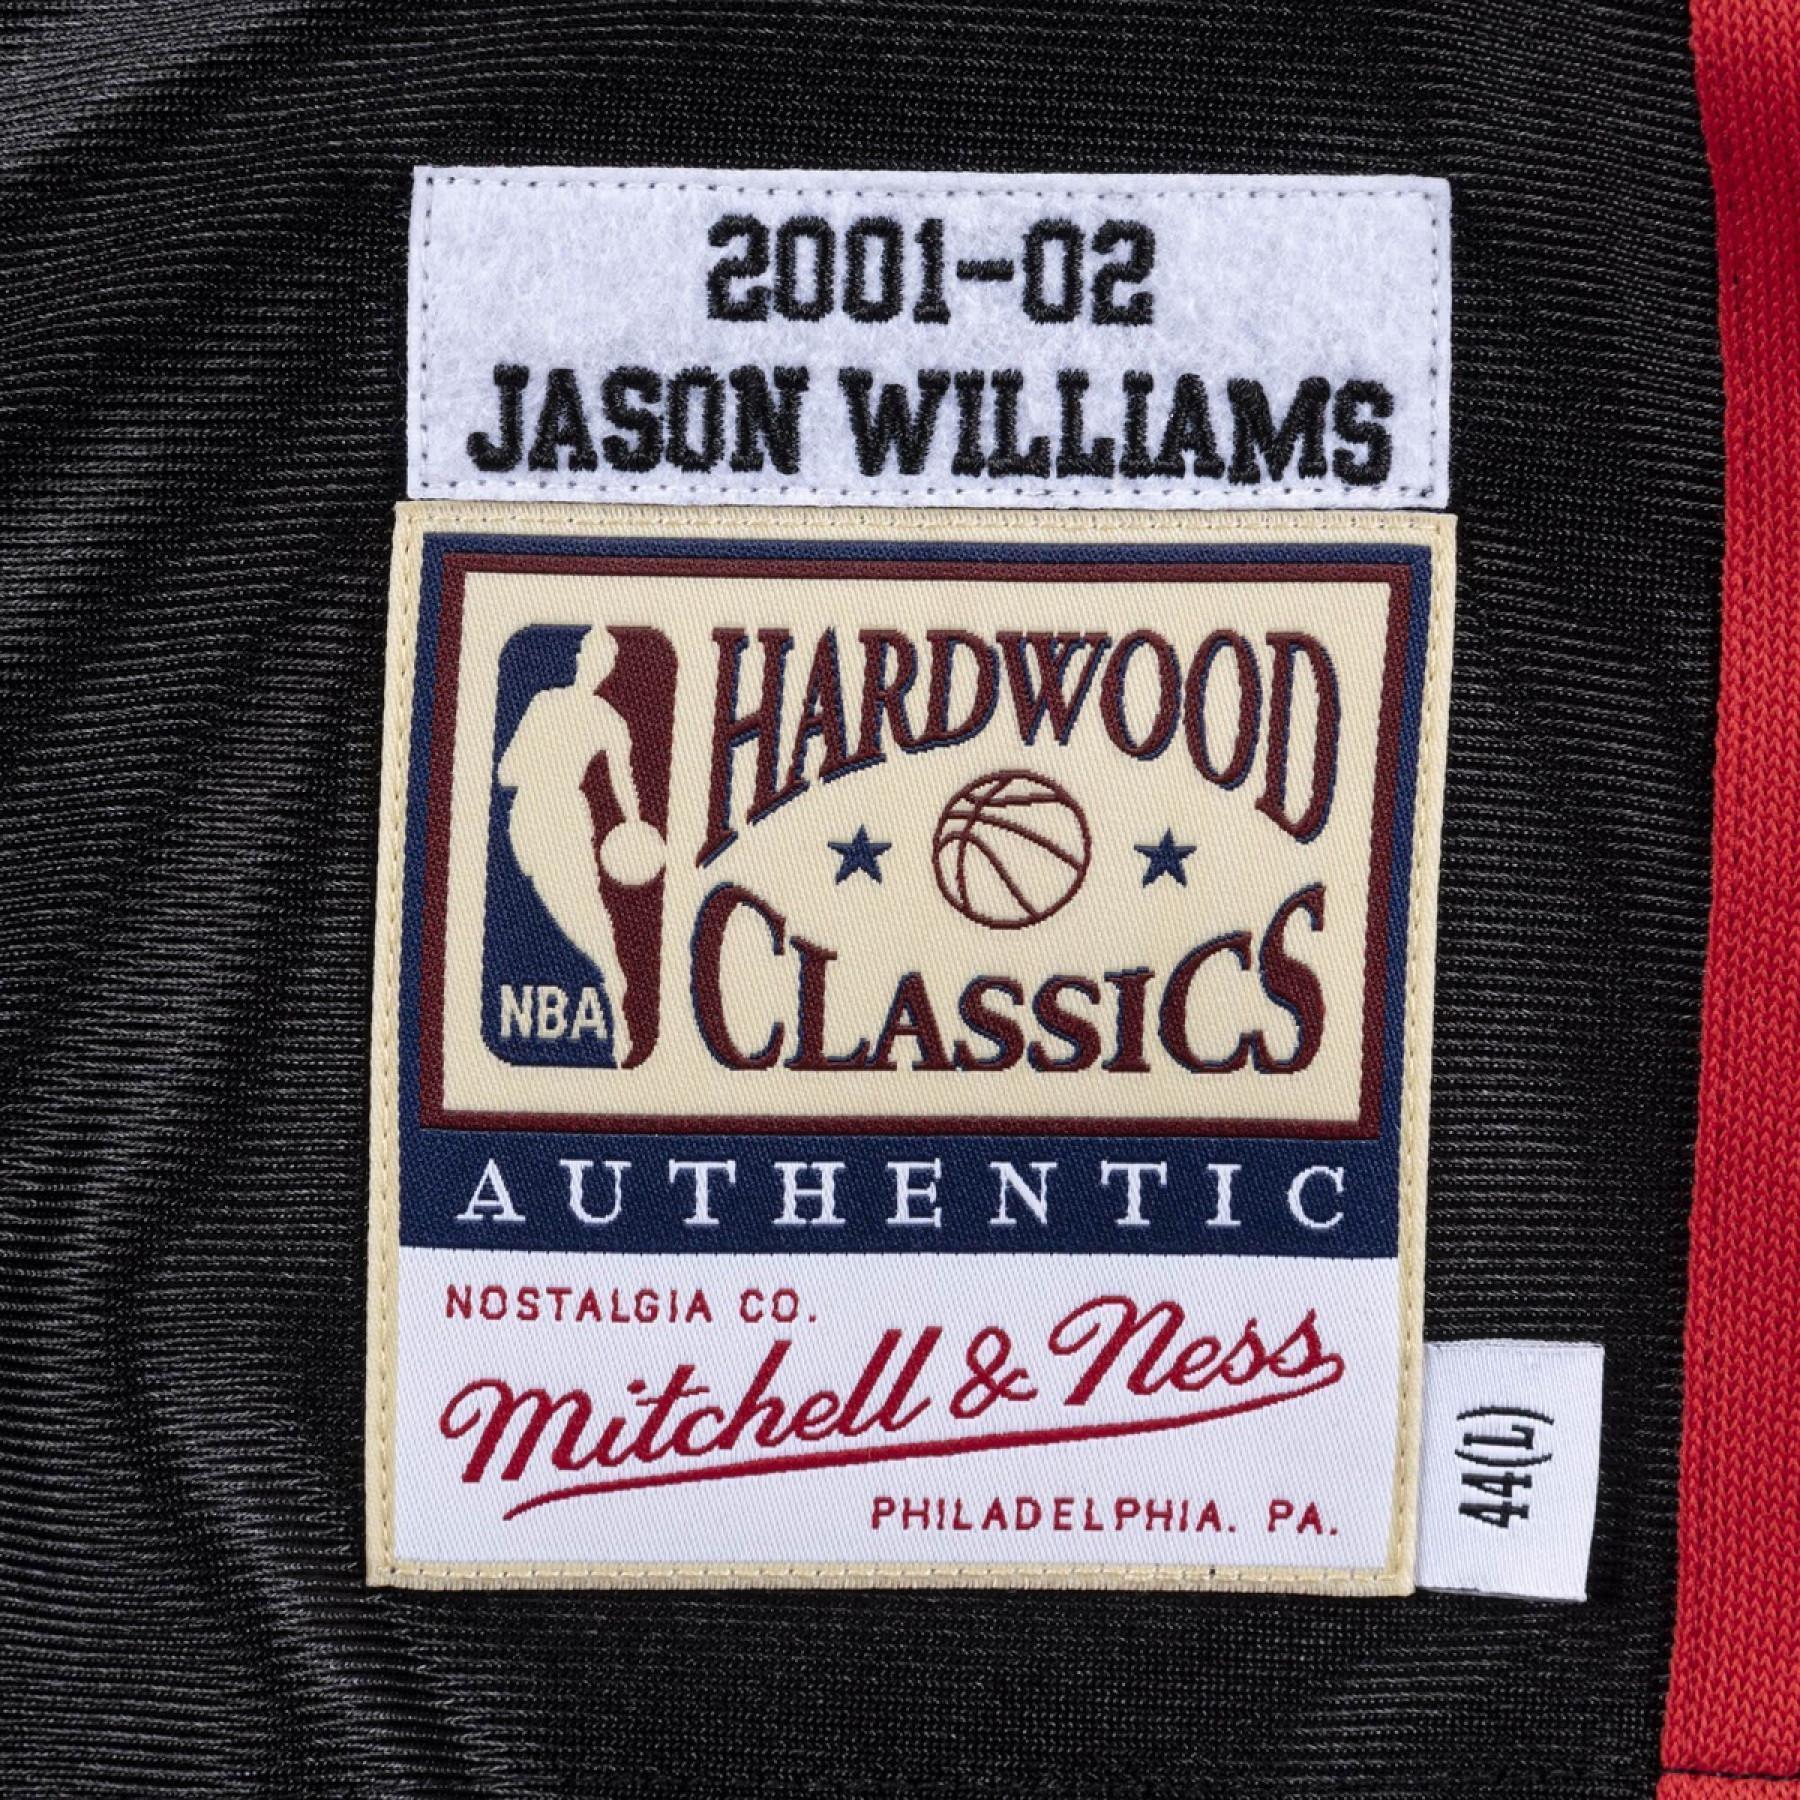 Maillot authentique Memphis Grizzlies nba Jason Williams